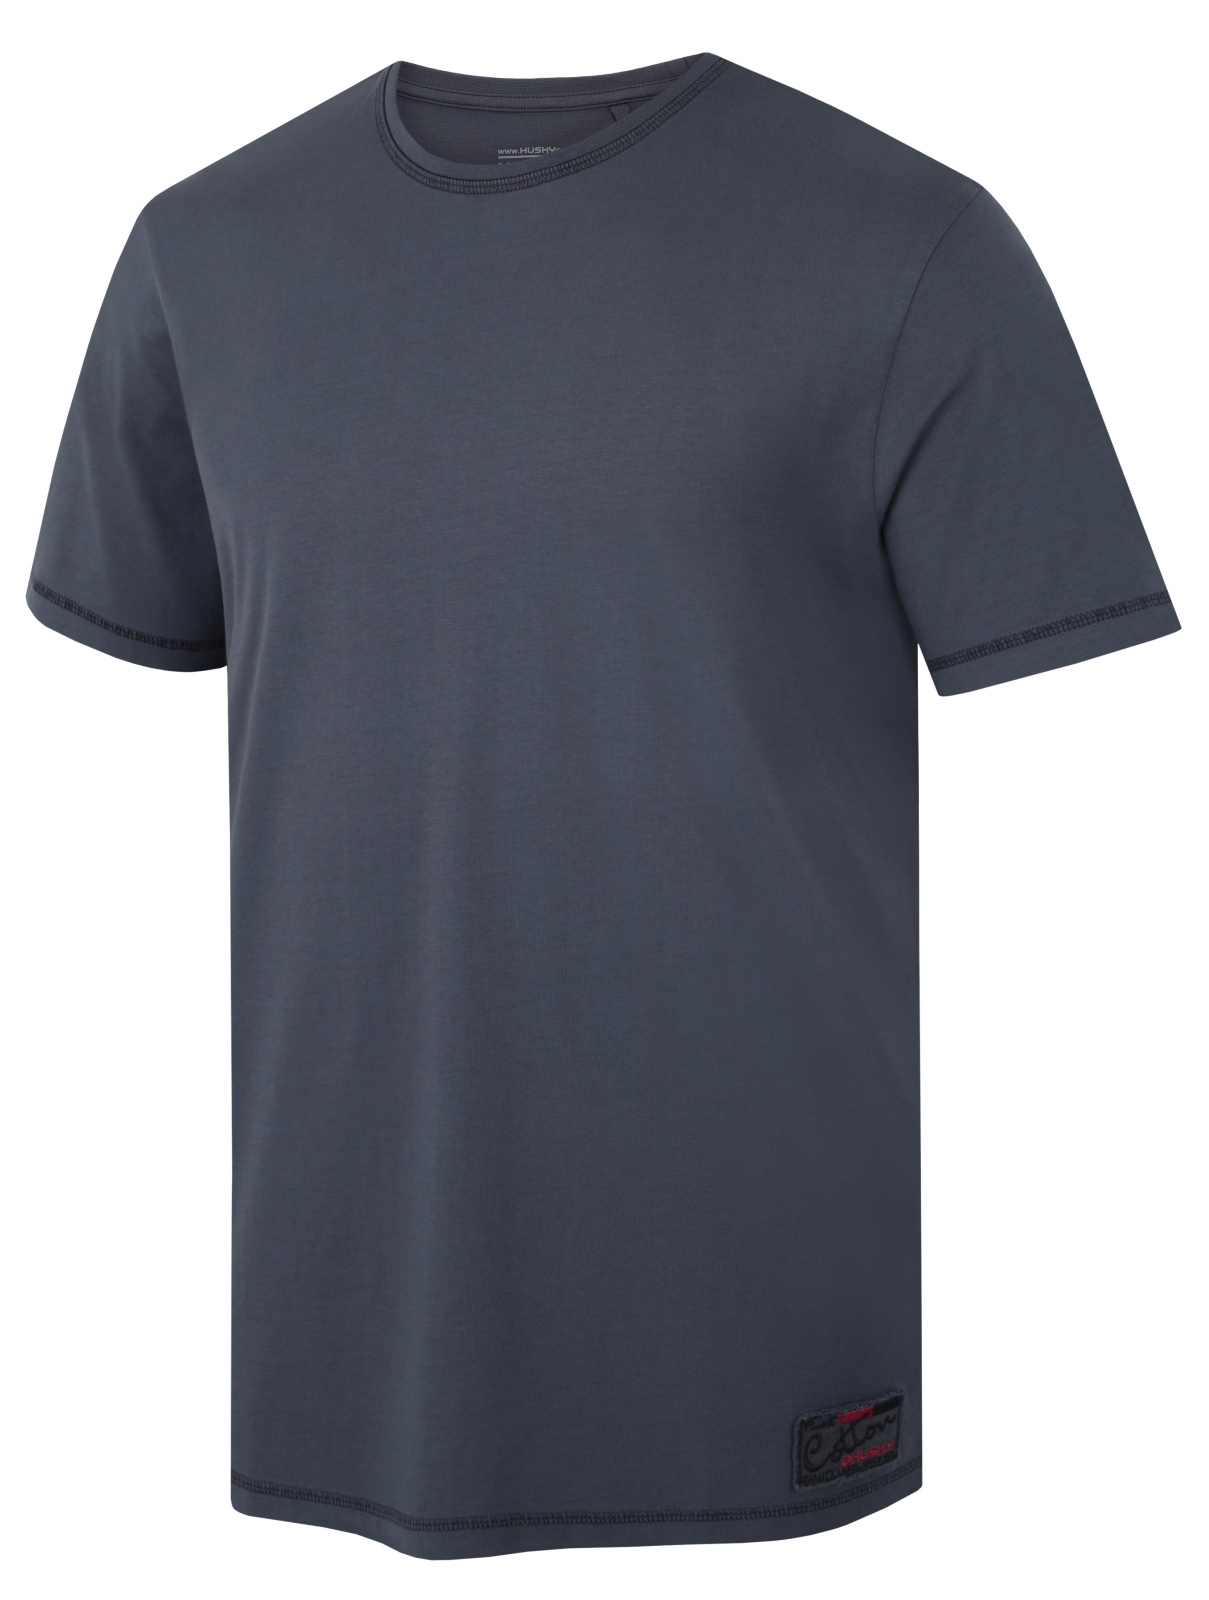 Husky Pánské bavlněné triko Tee Base M dark grey Velikost: L pánské tričko s krátkým rukávem